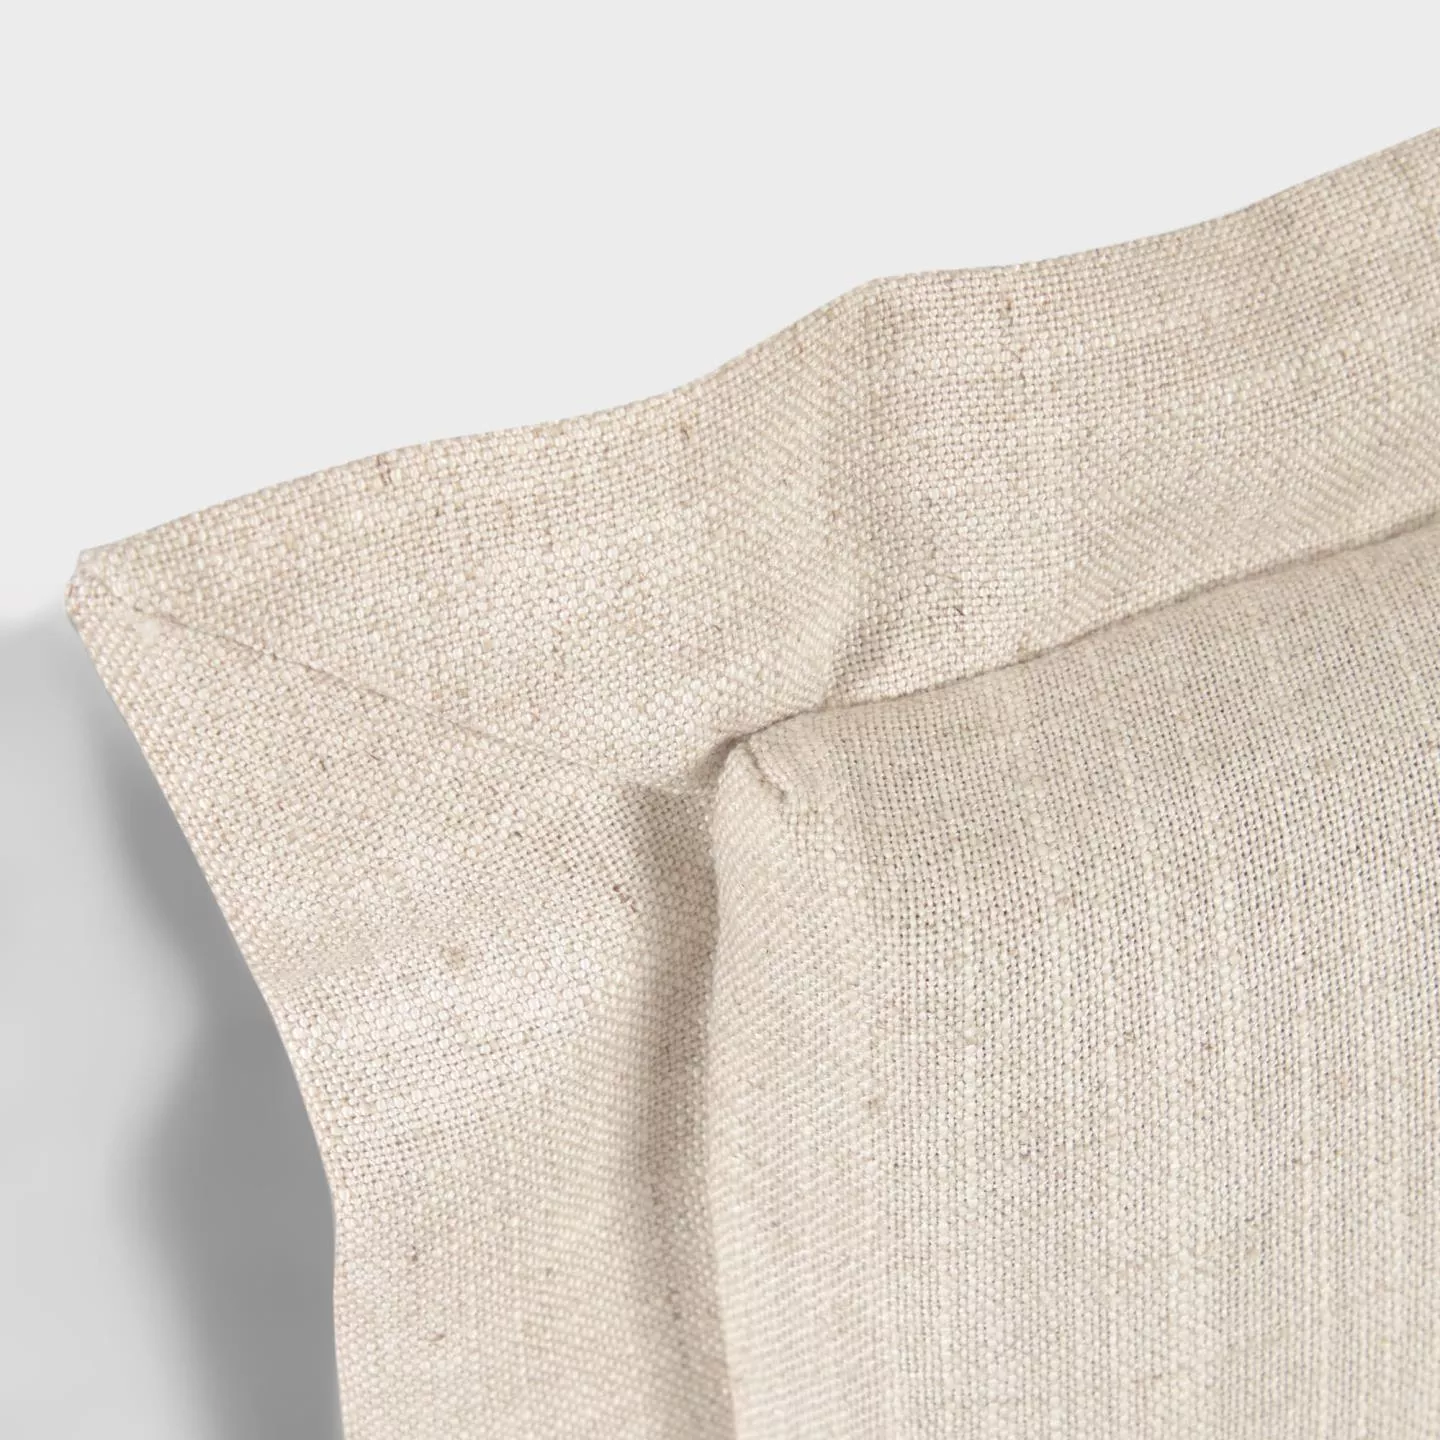 Изголовье La Forma лен белого цвета Tanit со съемным чехлом 186 x 106 см